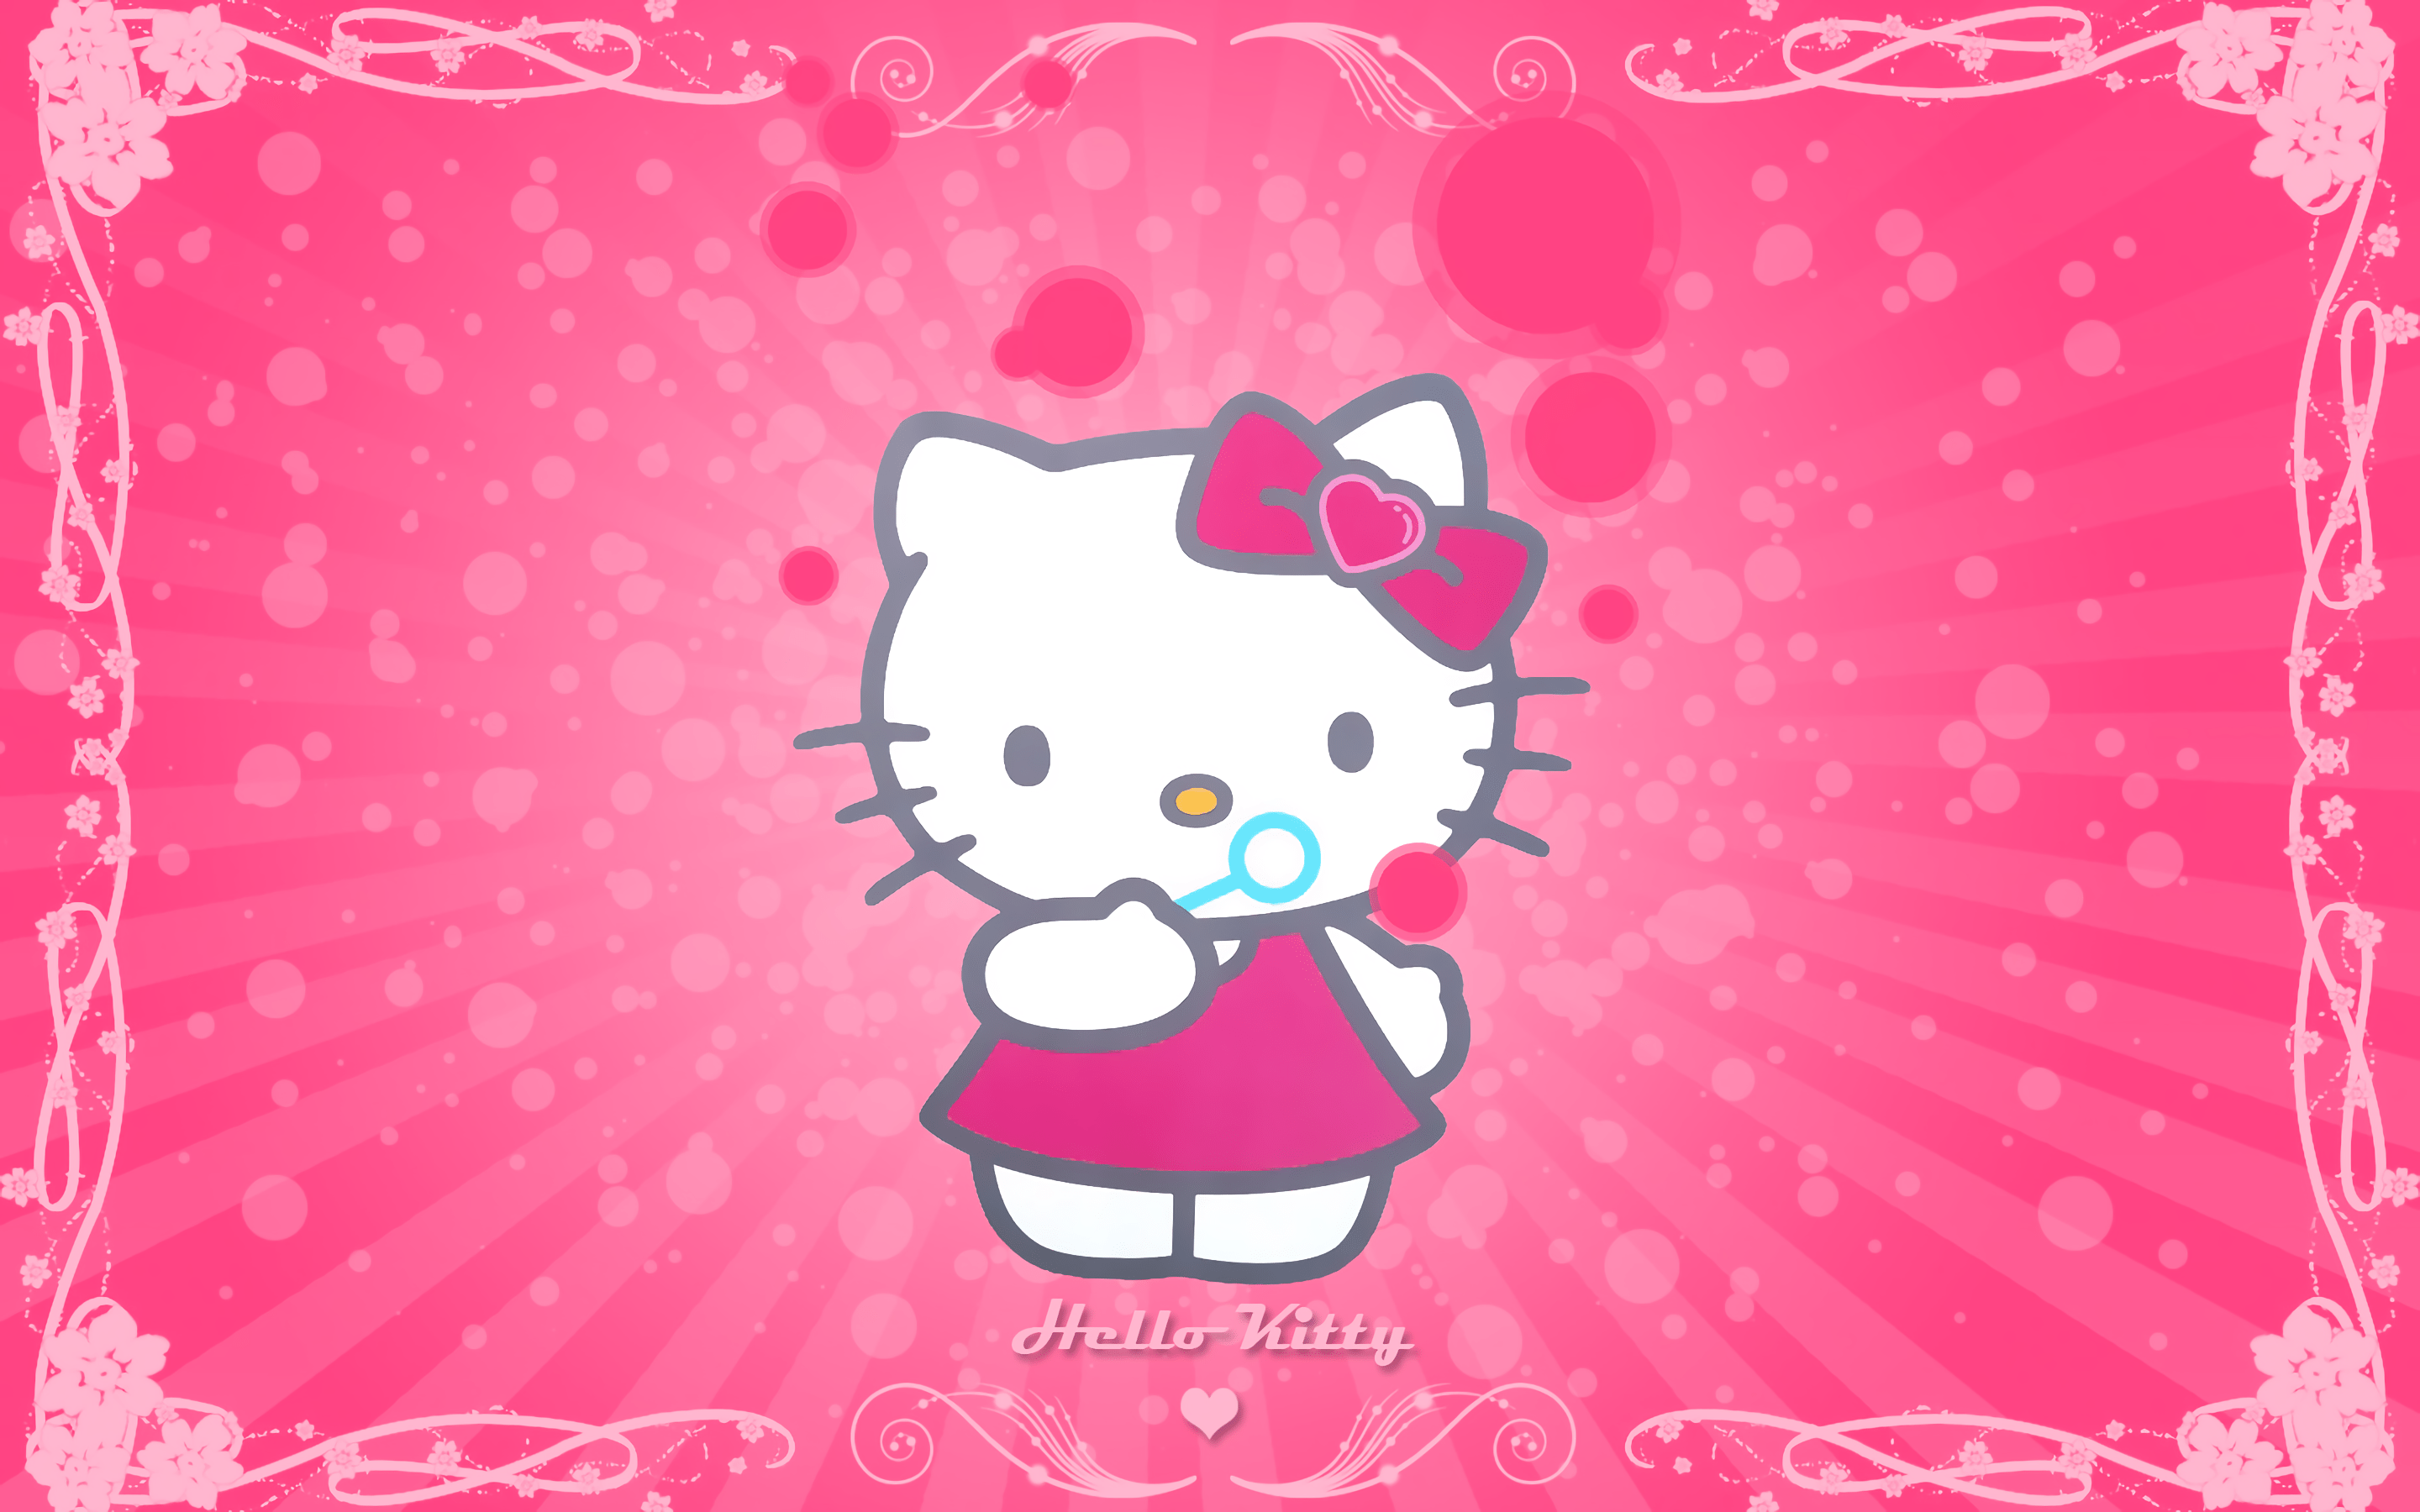 Hello kitty wallpaper hd - Hello Kitty